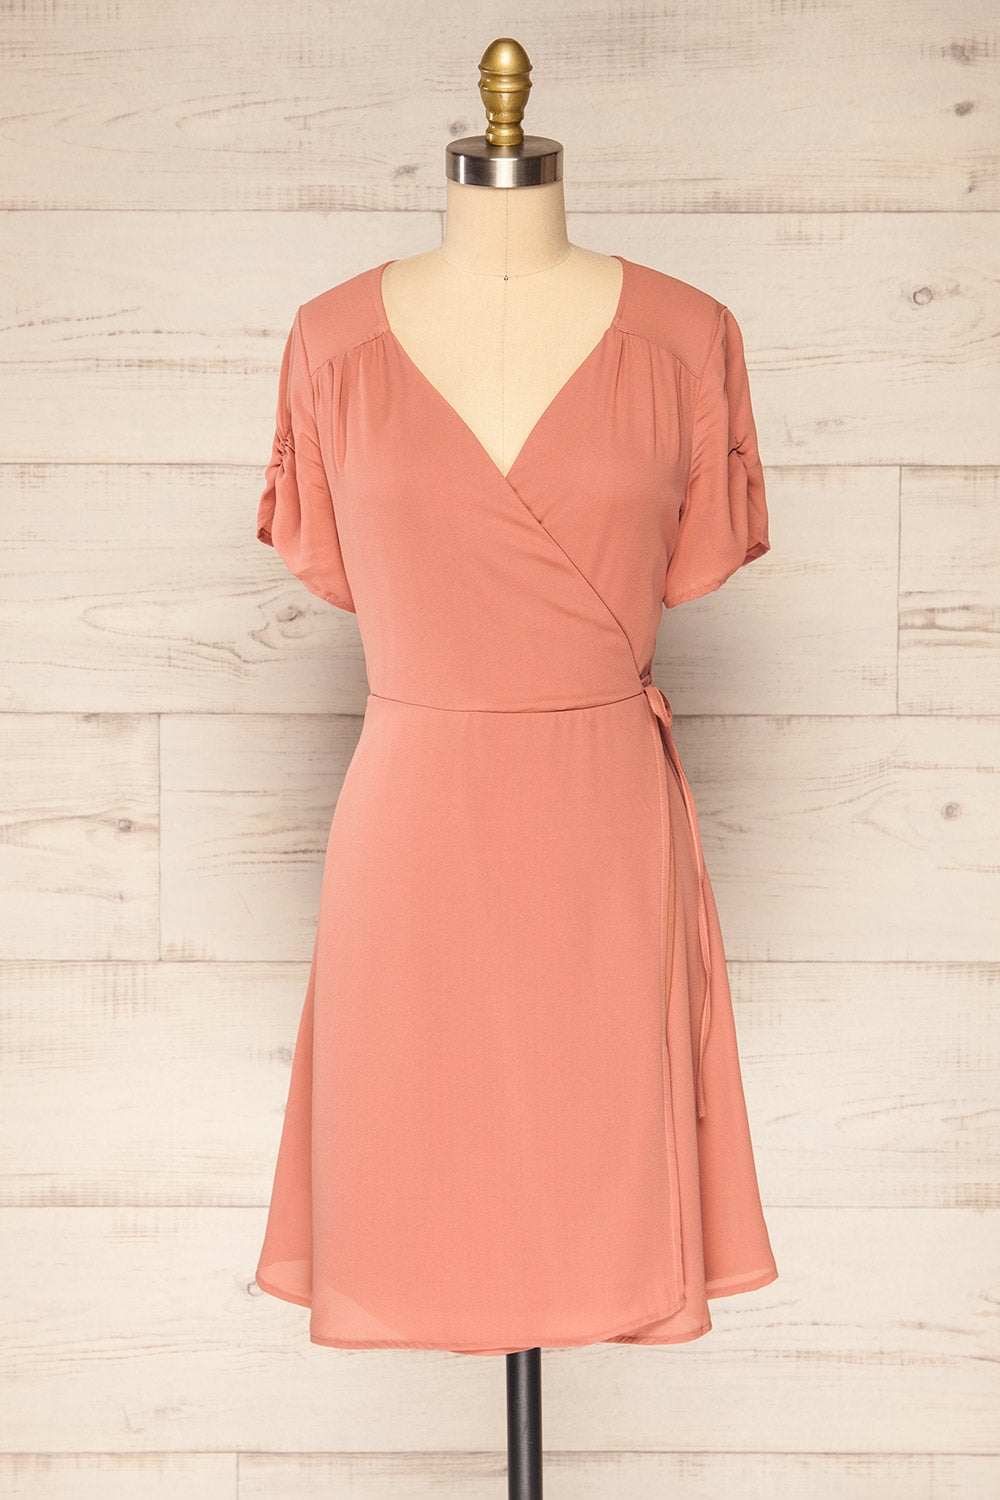 Jaurel Dusty Pink Short Sleeve Wrap Dress | La petite garçonne front view 